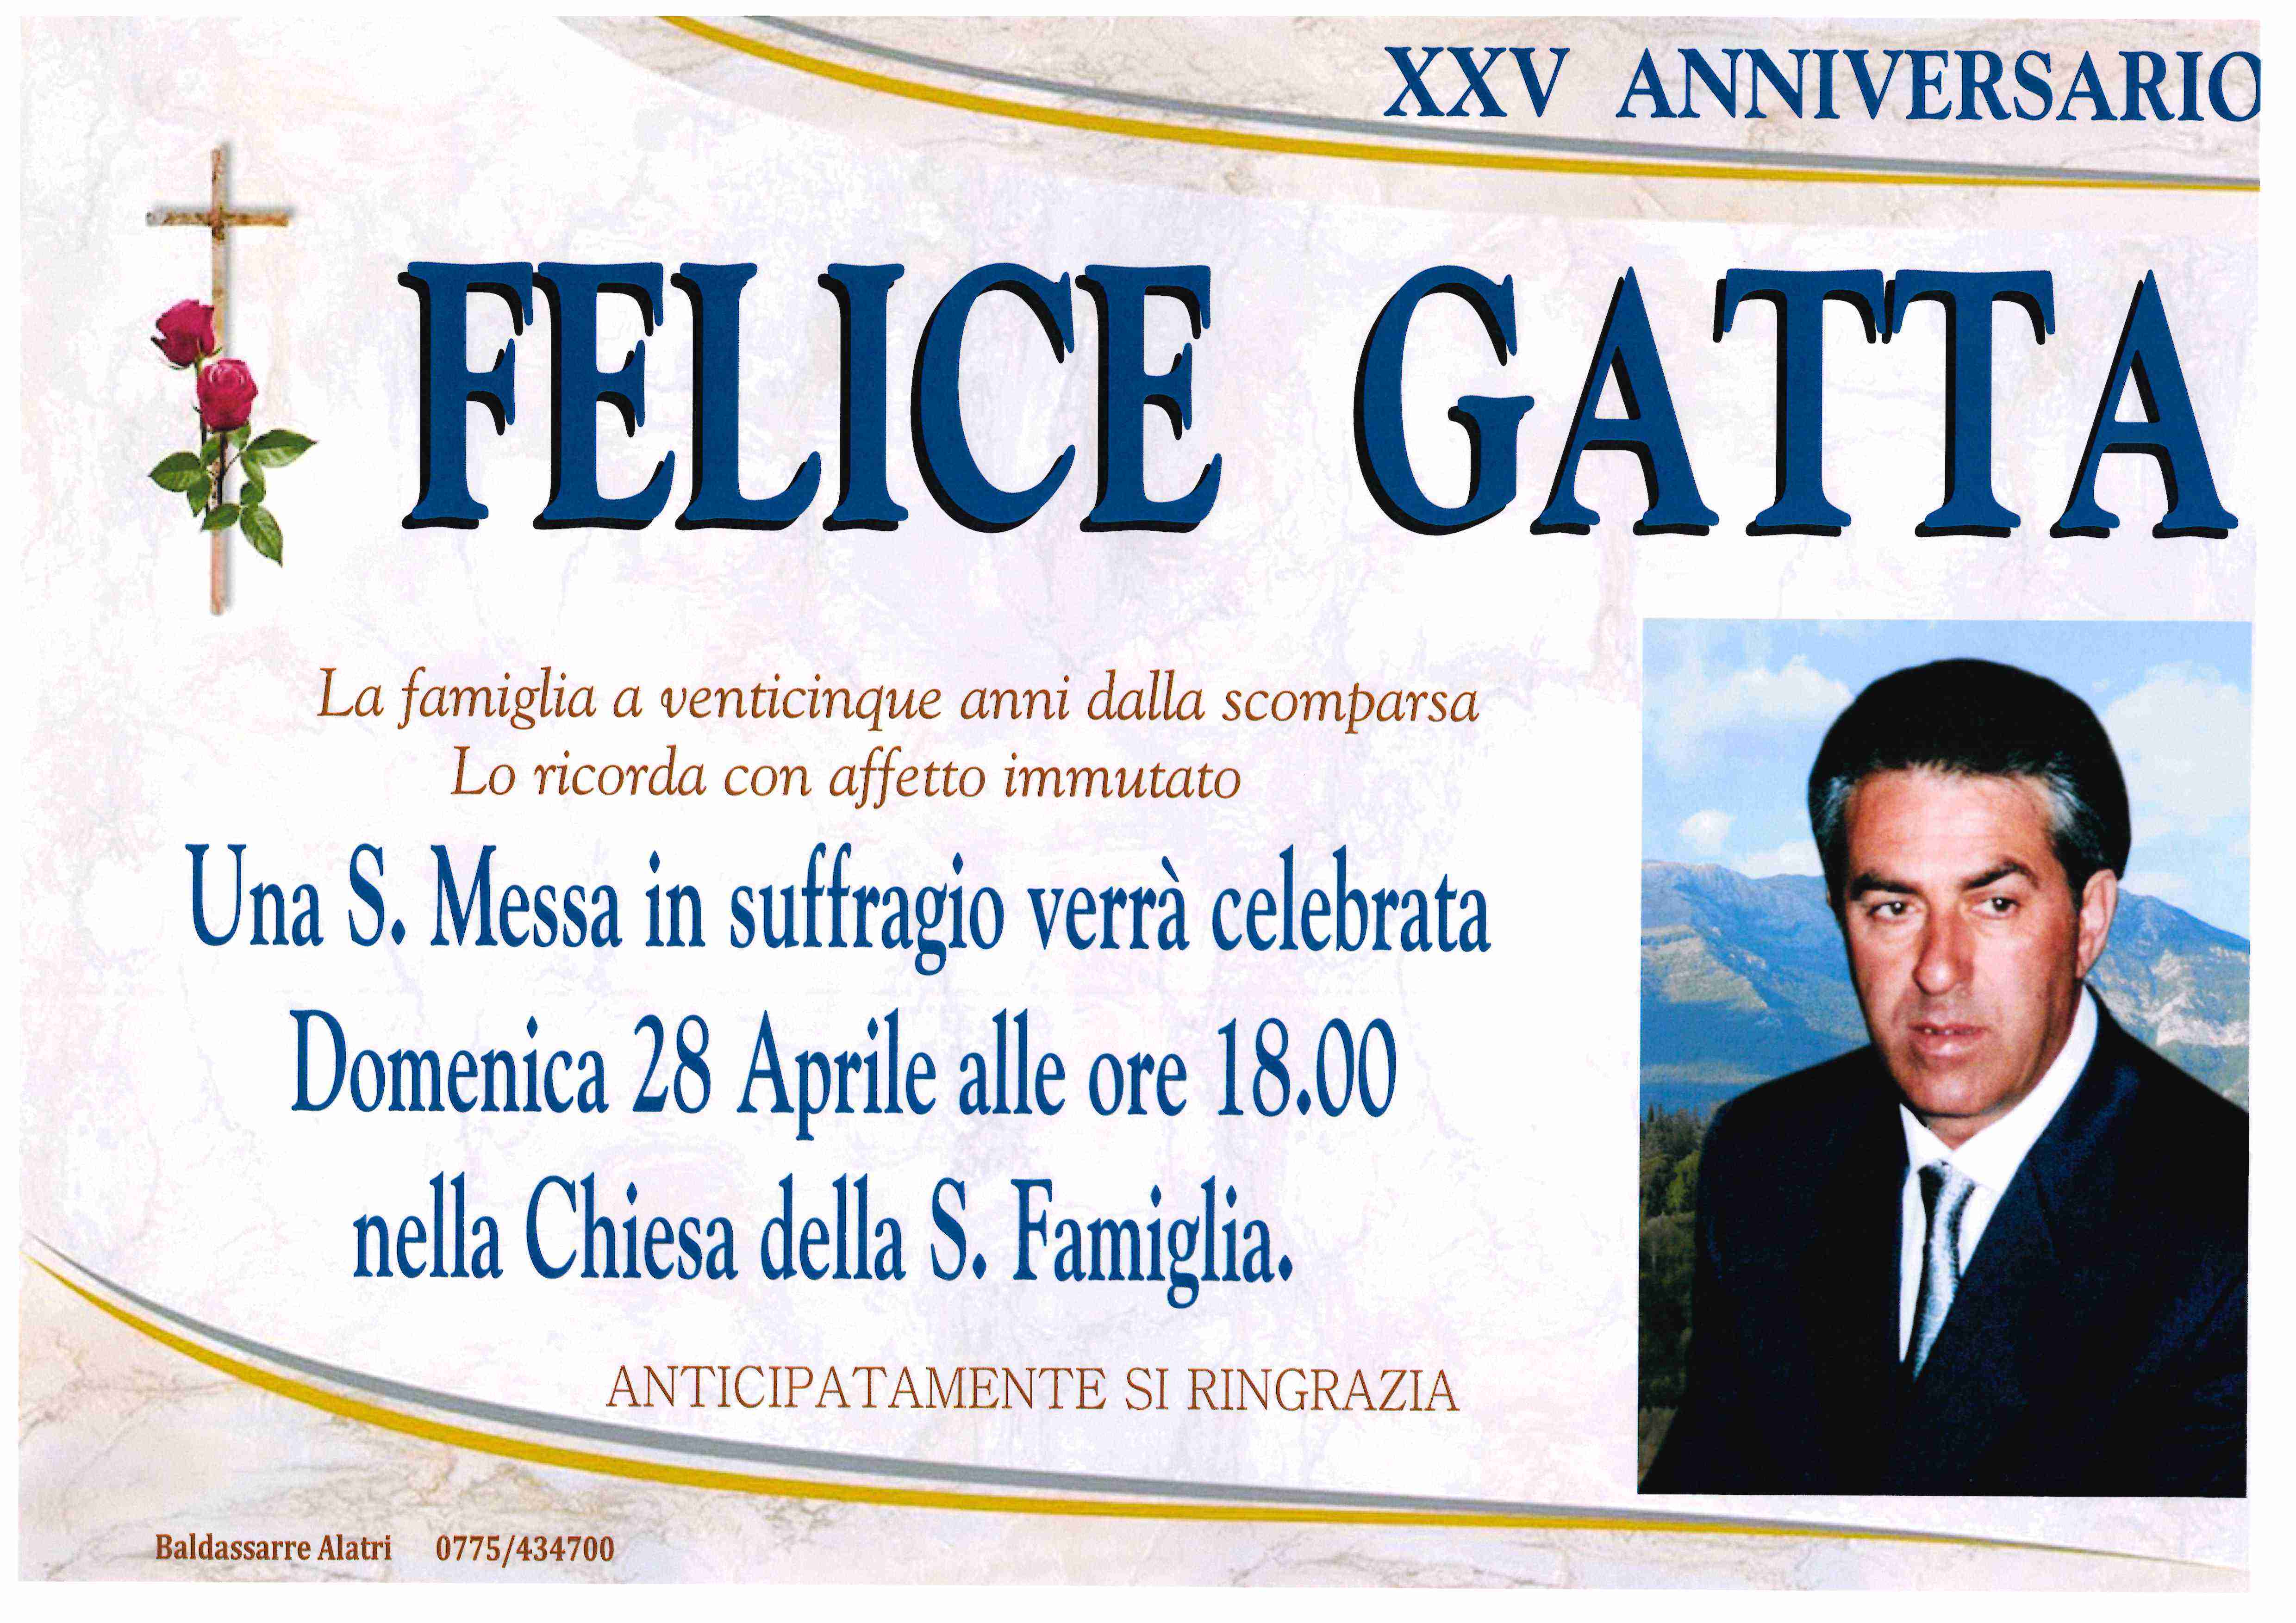 Felice Gatta